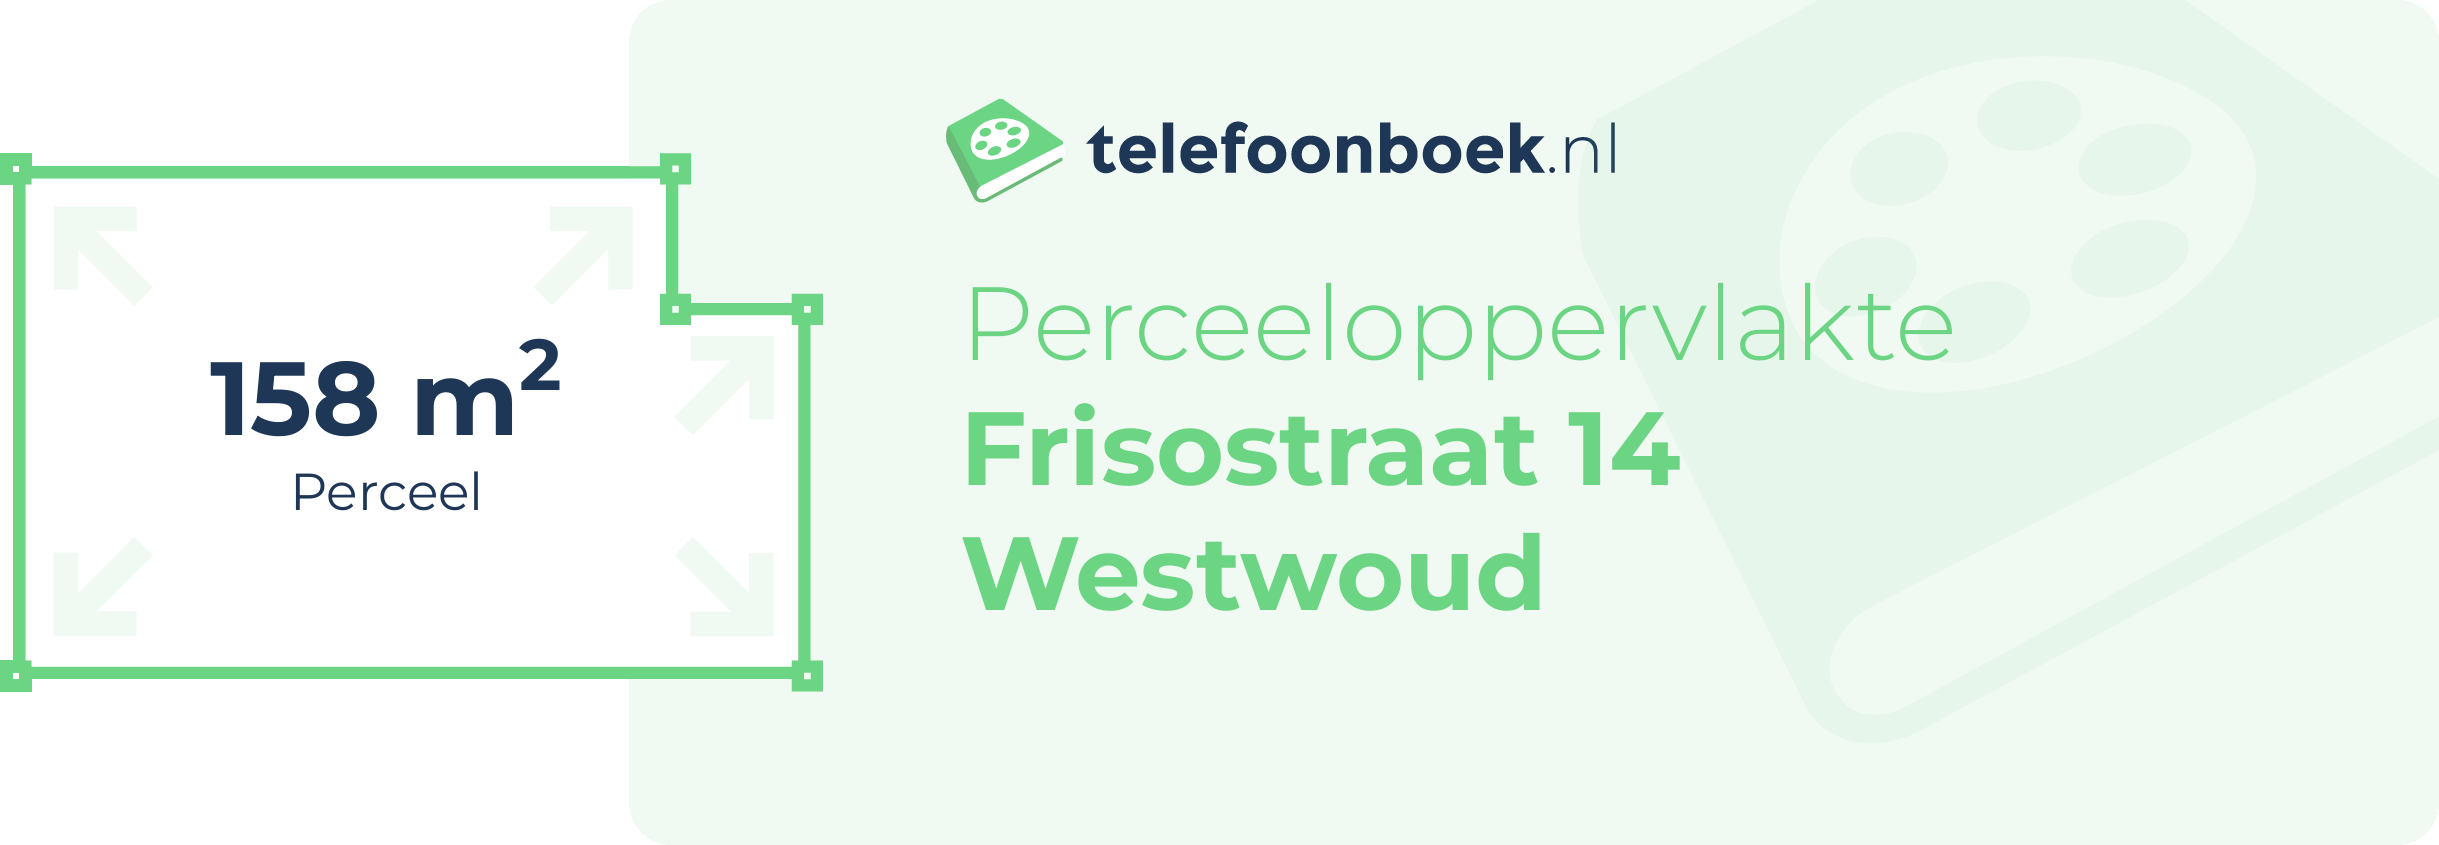 Perceeloppervlakte Frisostraat 14 Westwoud